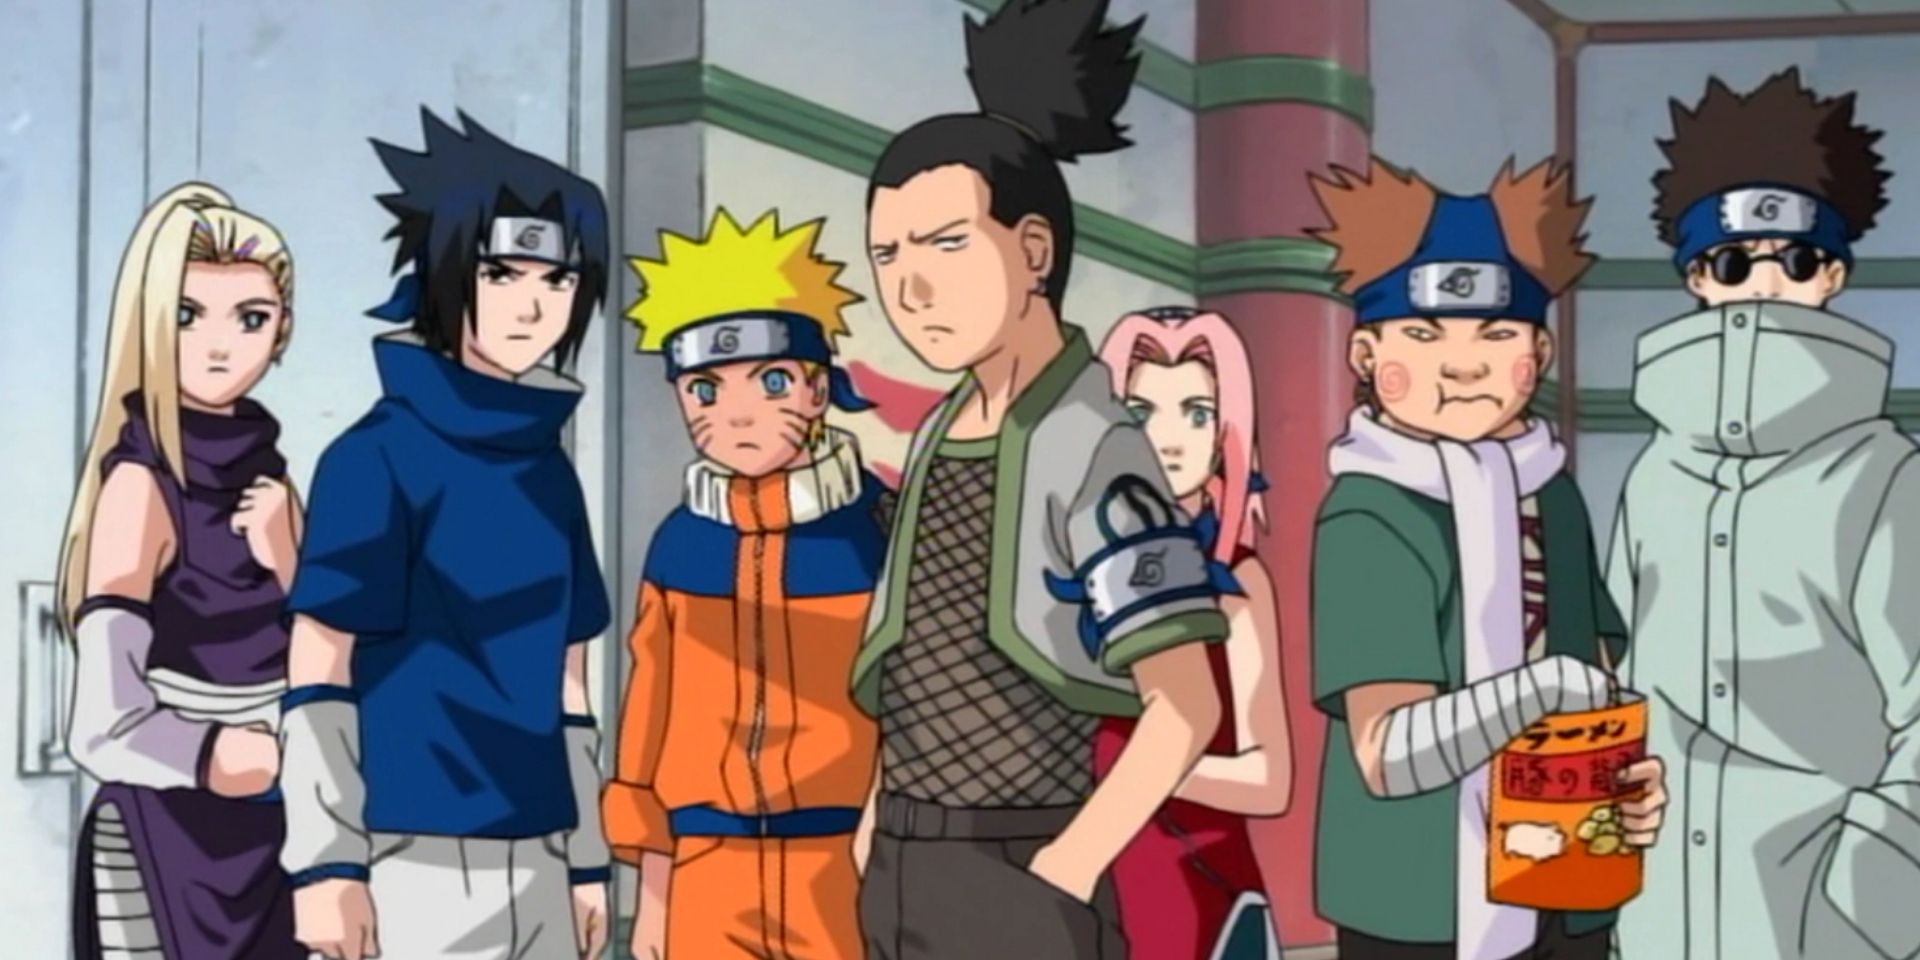 Ino, Sasuke, Naruto, Shikamaru, Sakura, Choji, and Shino before their Chunin exams in the original Naruto anime